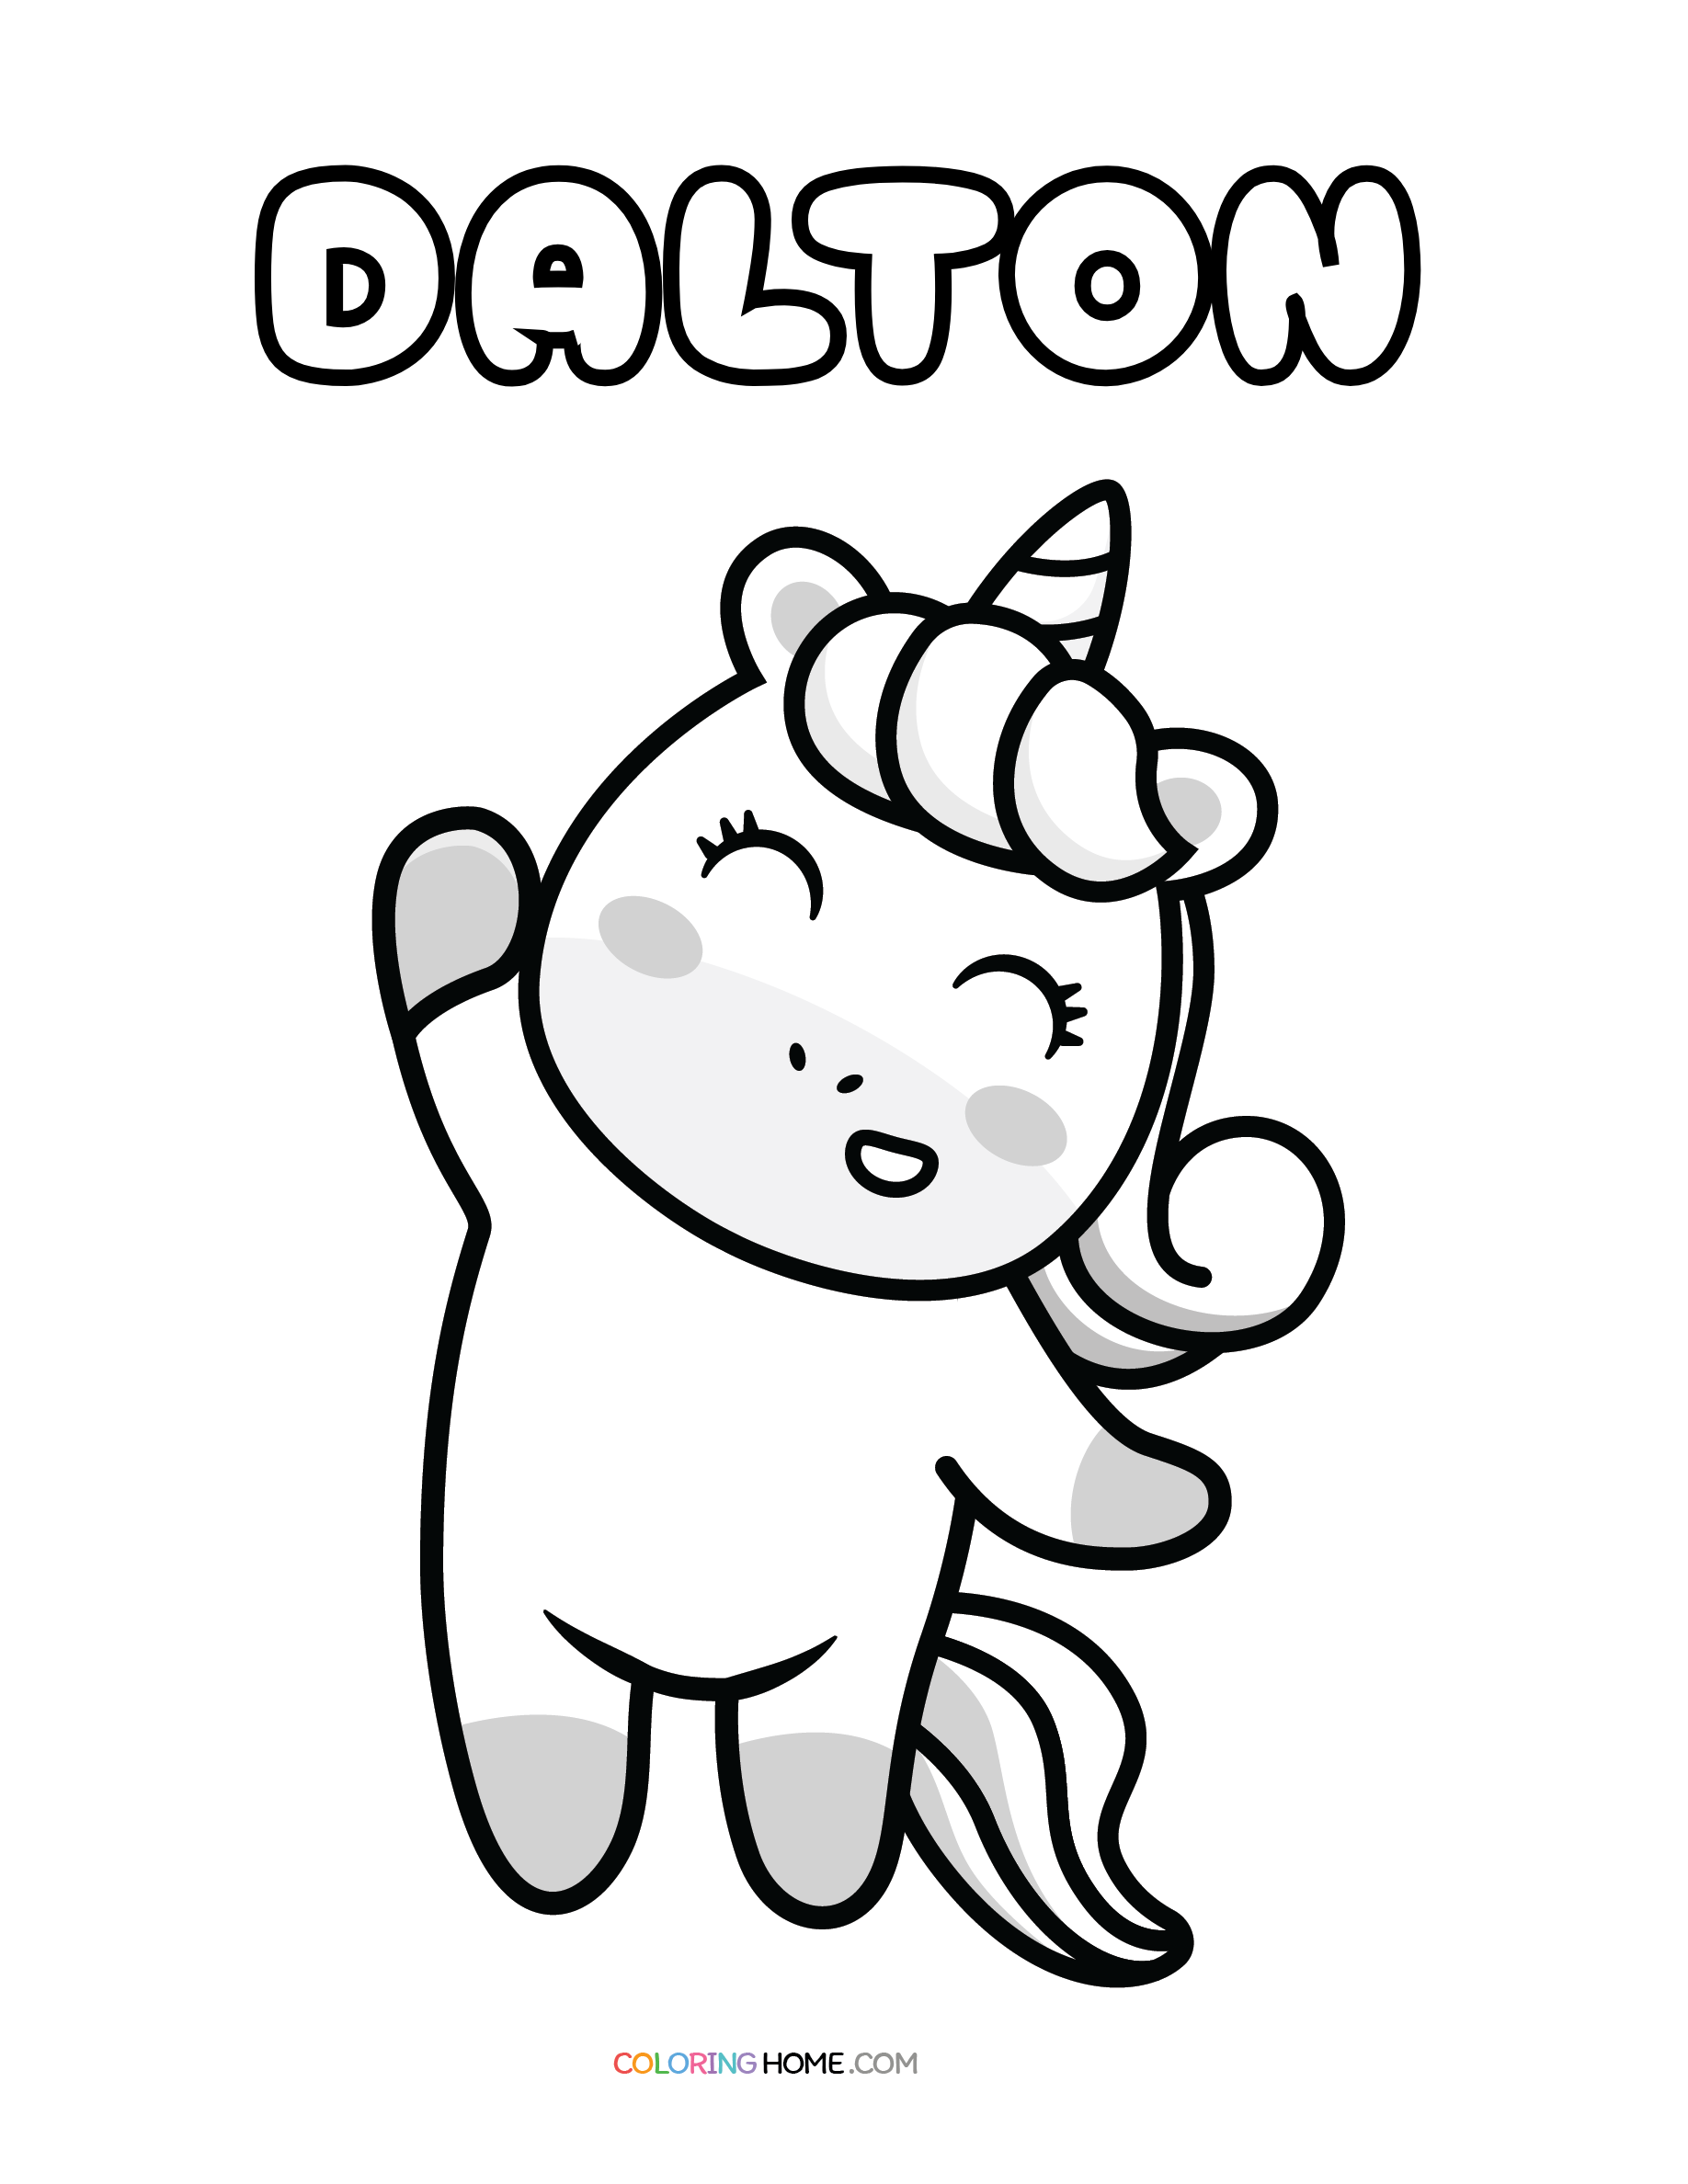 Dalton unicorn coloring page